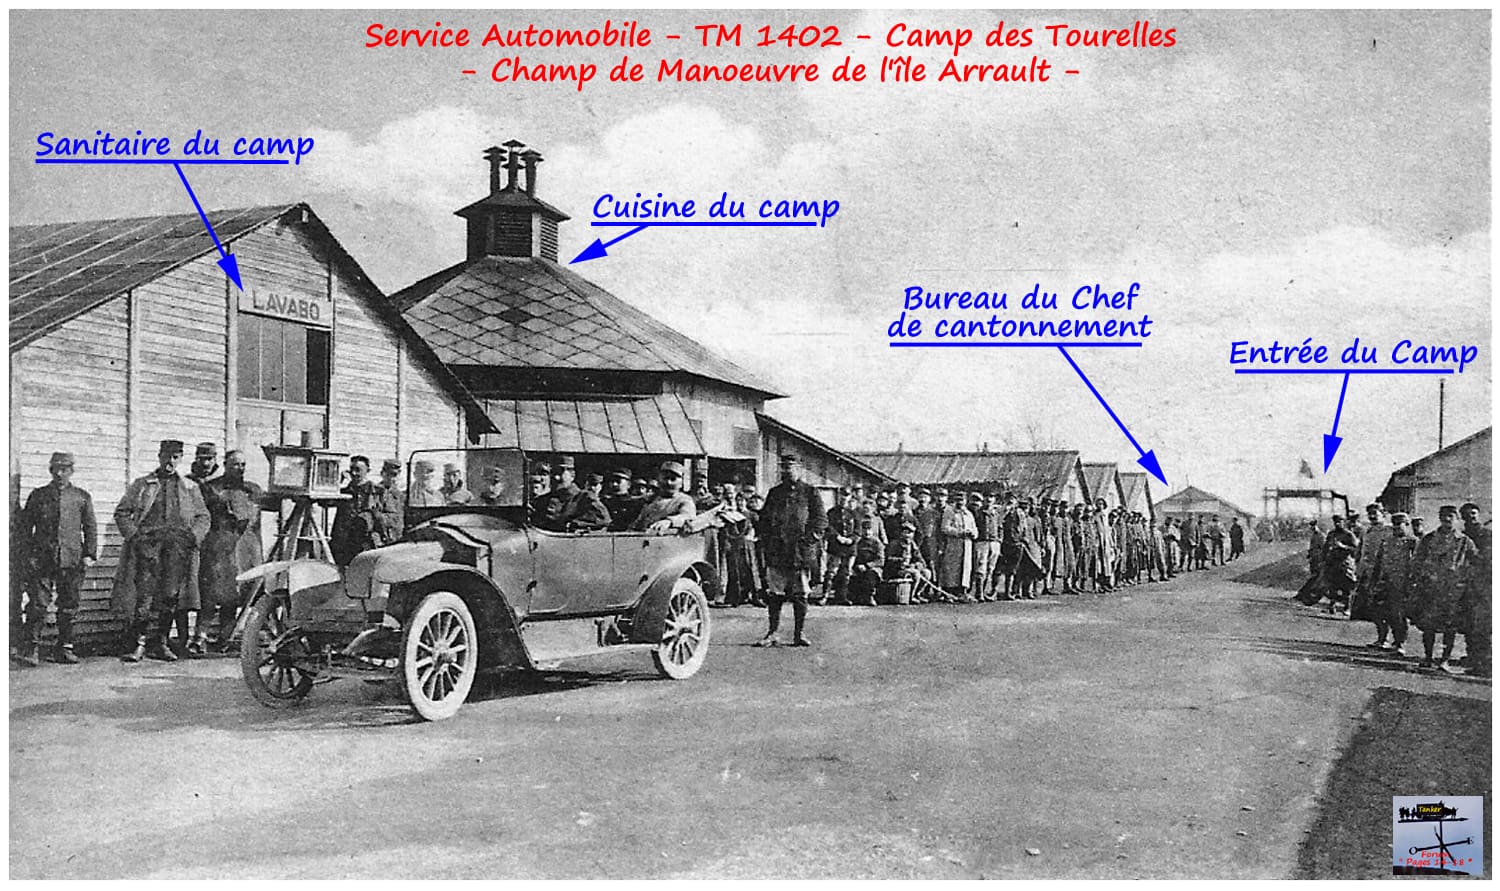 09 - Camp des Tourelles - Cuisine TM 1402-min.jpg